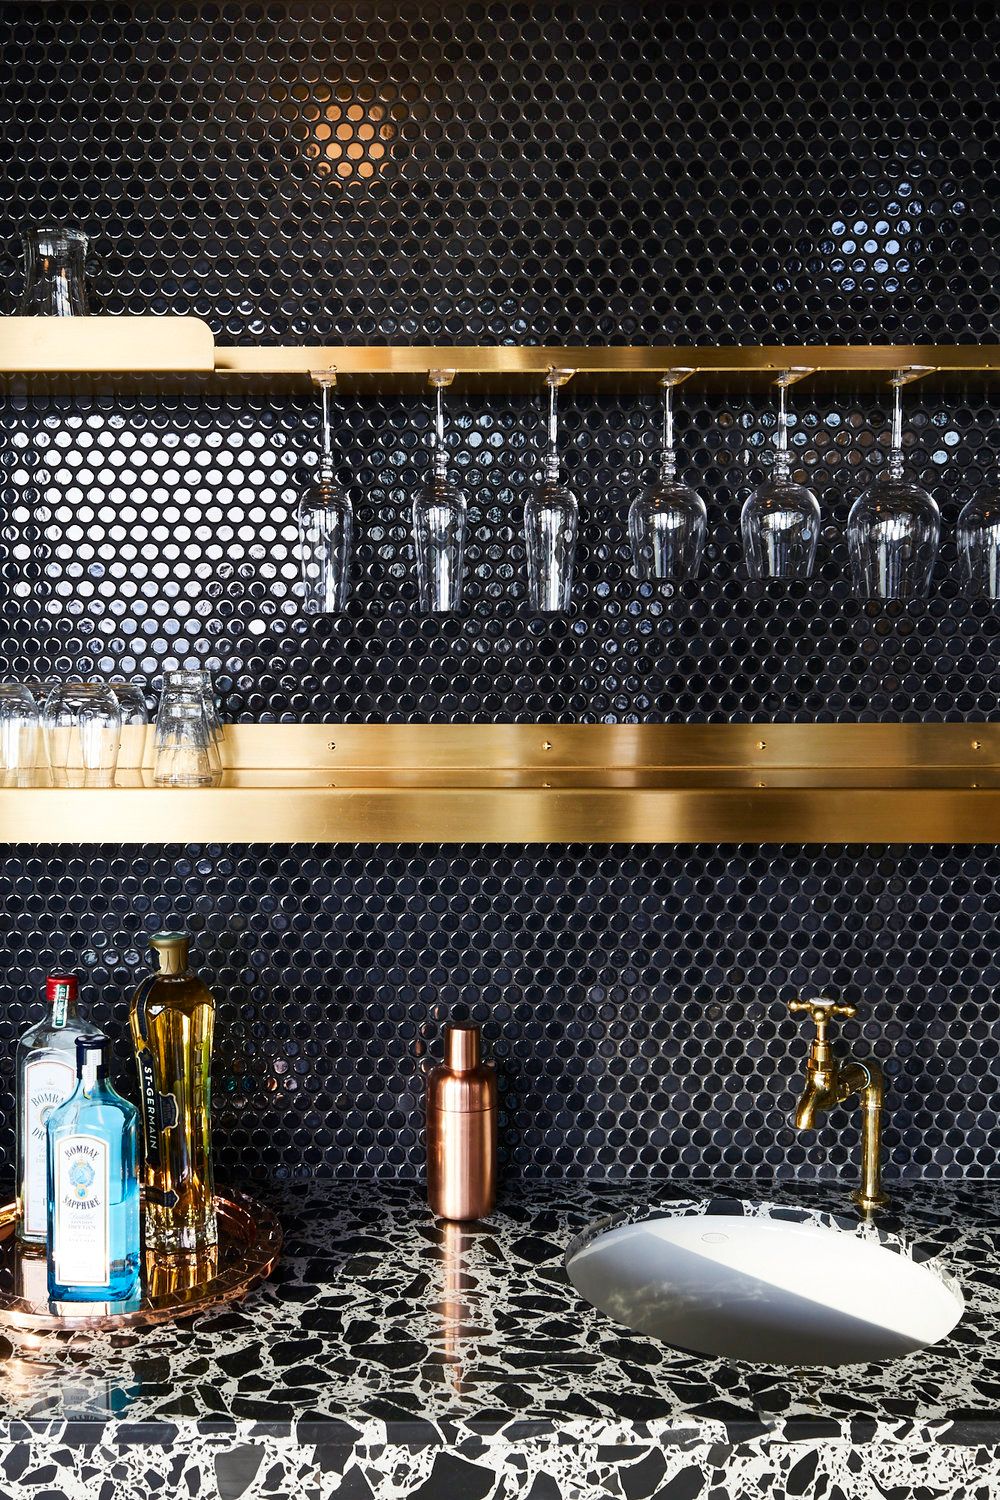 55 Best Kitchen Backsplash Ideas Tile Designs For Kitchen Backsplashes